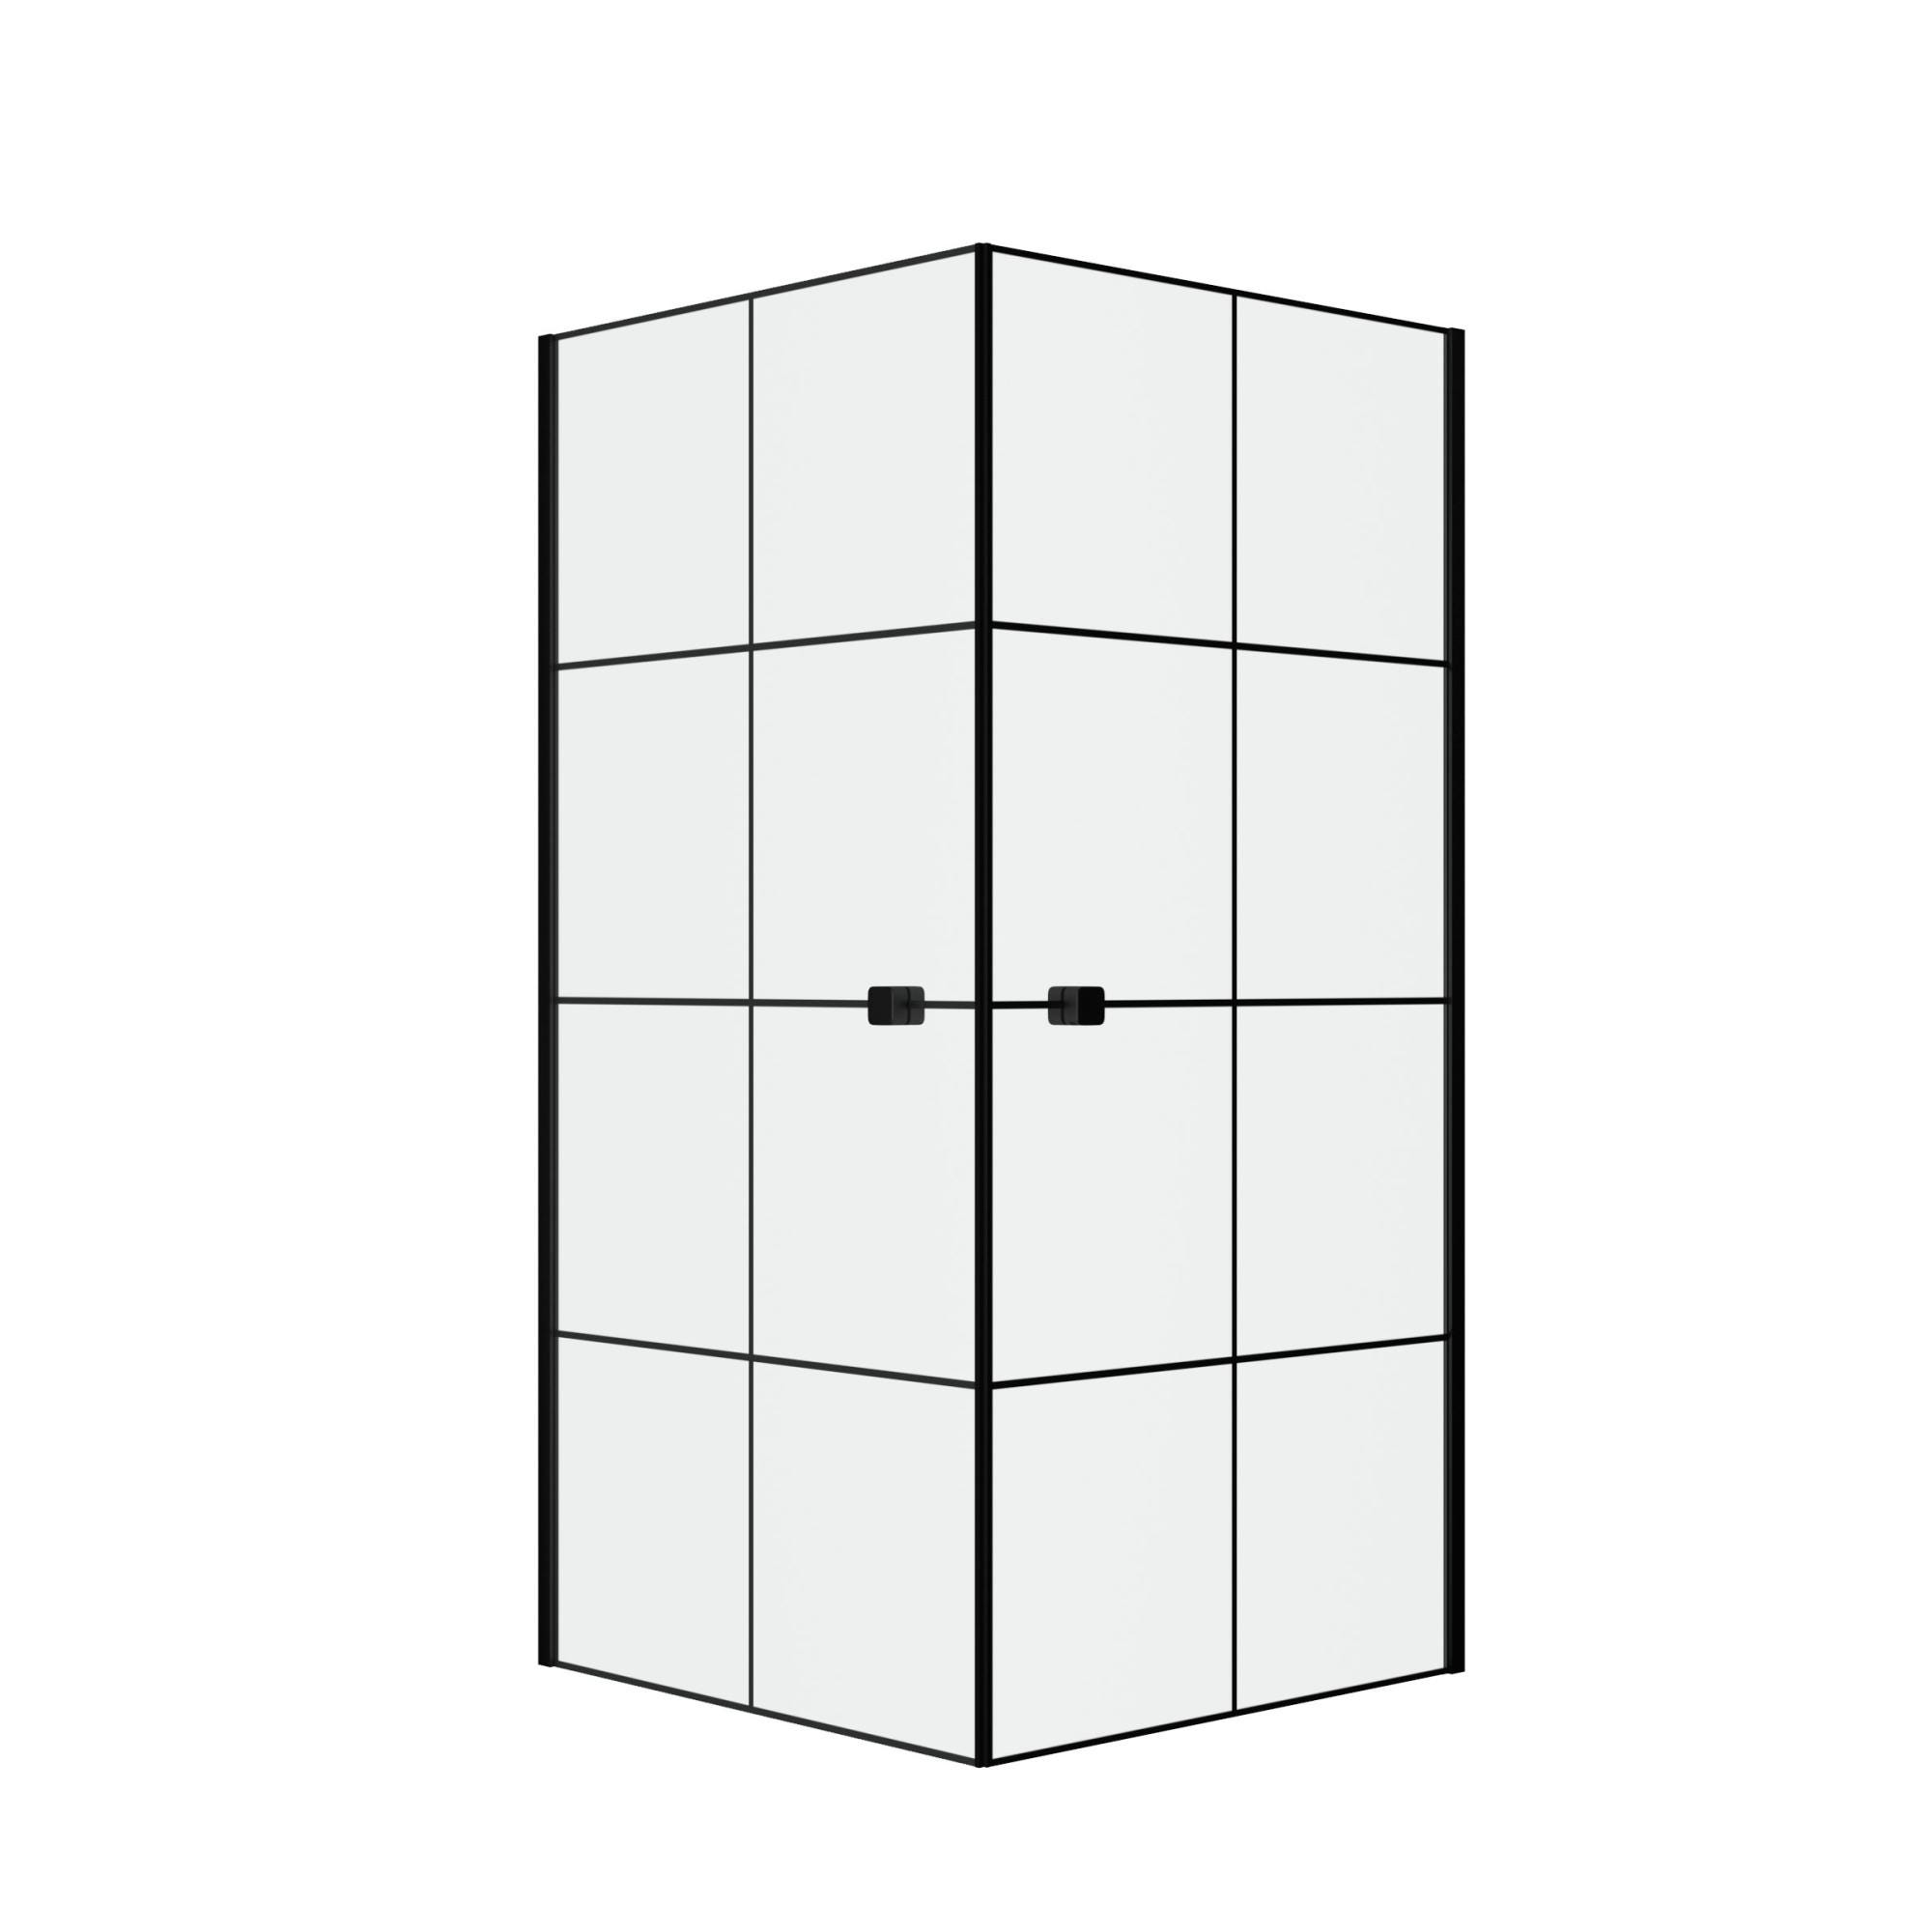 Portes de Douche en Angle 90x90x190 cm - Motifs carrés - Profilés Noir Mat - BLACK CUBE 2